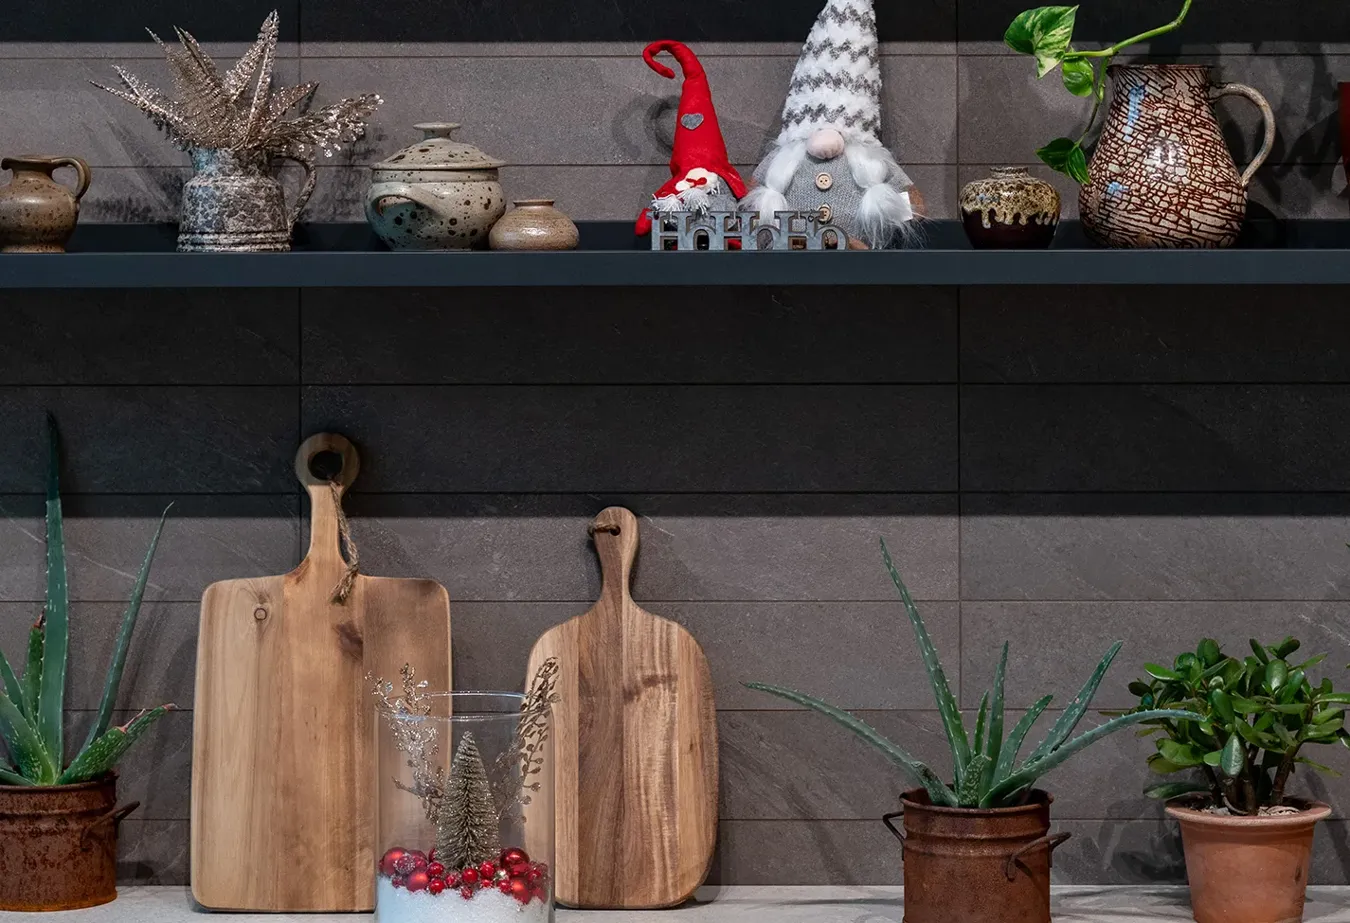 Cocina acogedora con azulejos Brystone, decoraciones navideñas tradicionales y accesorios de madera natural.